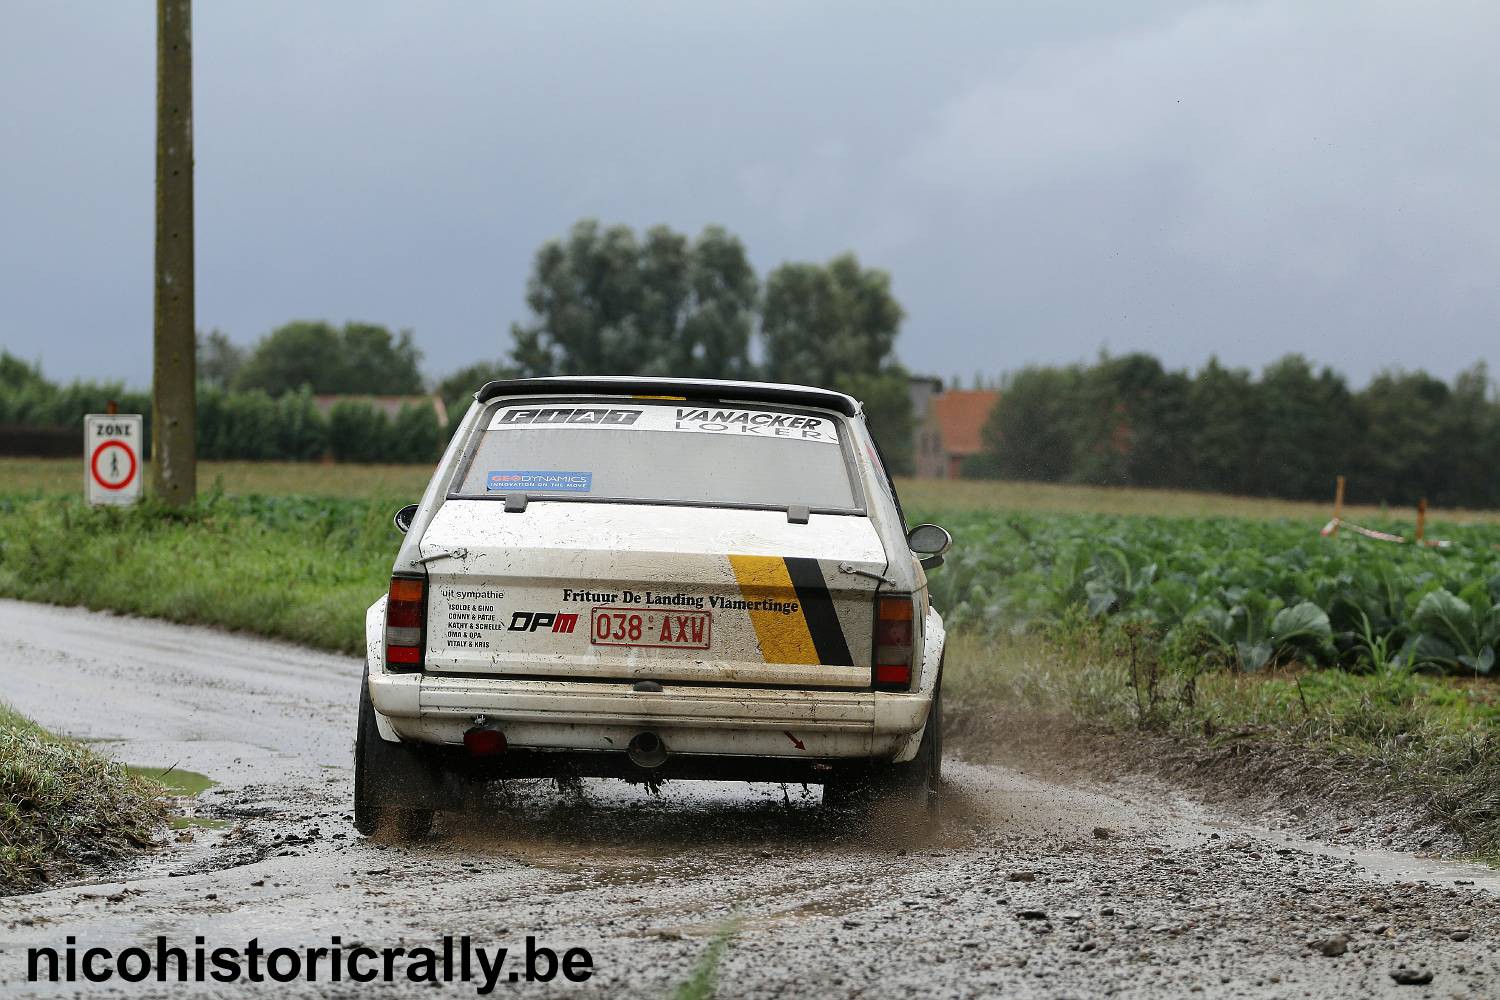 Wedstrijdverslag Pascal Clarys in de Rally van de Monteberg.